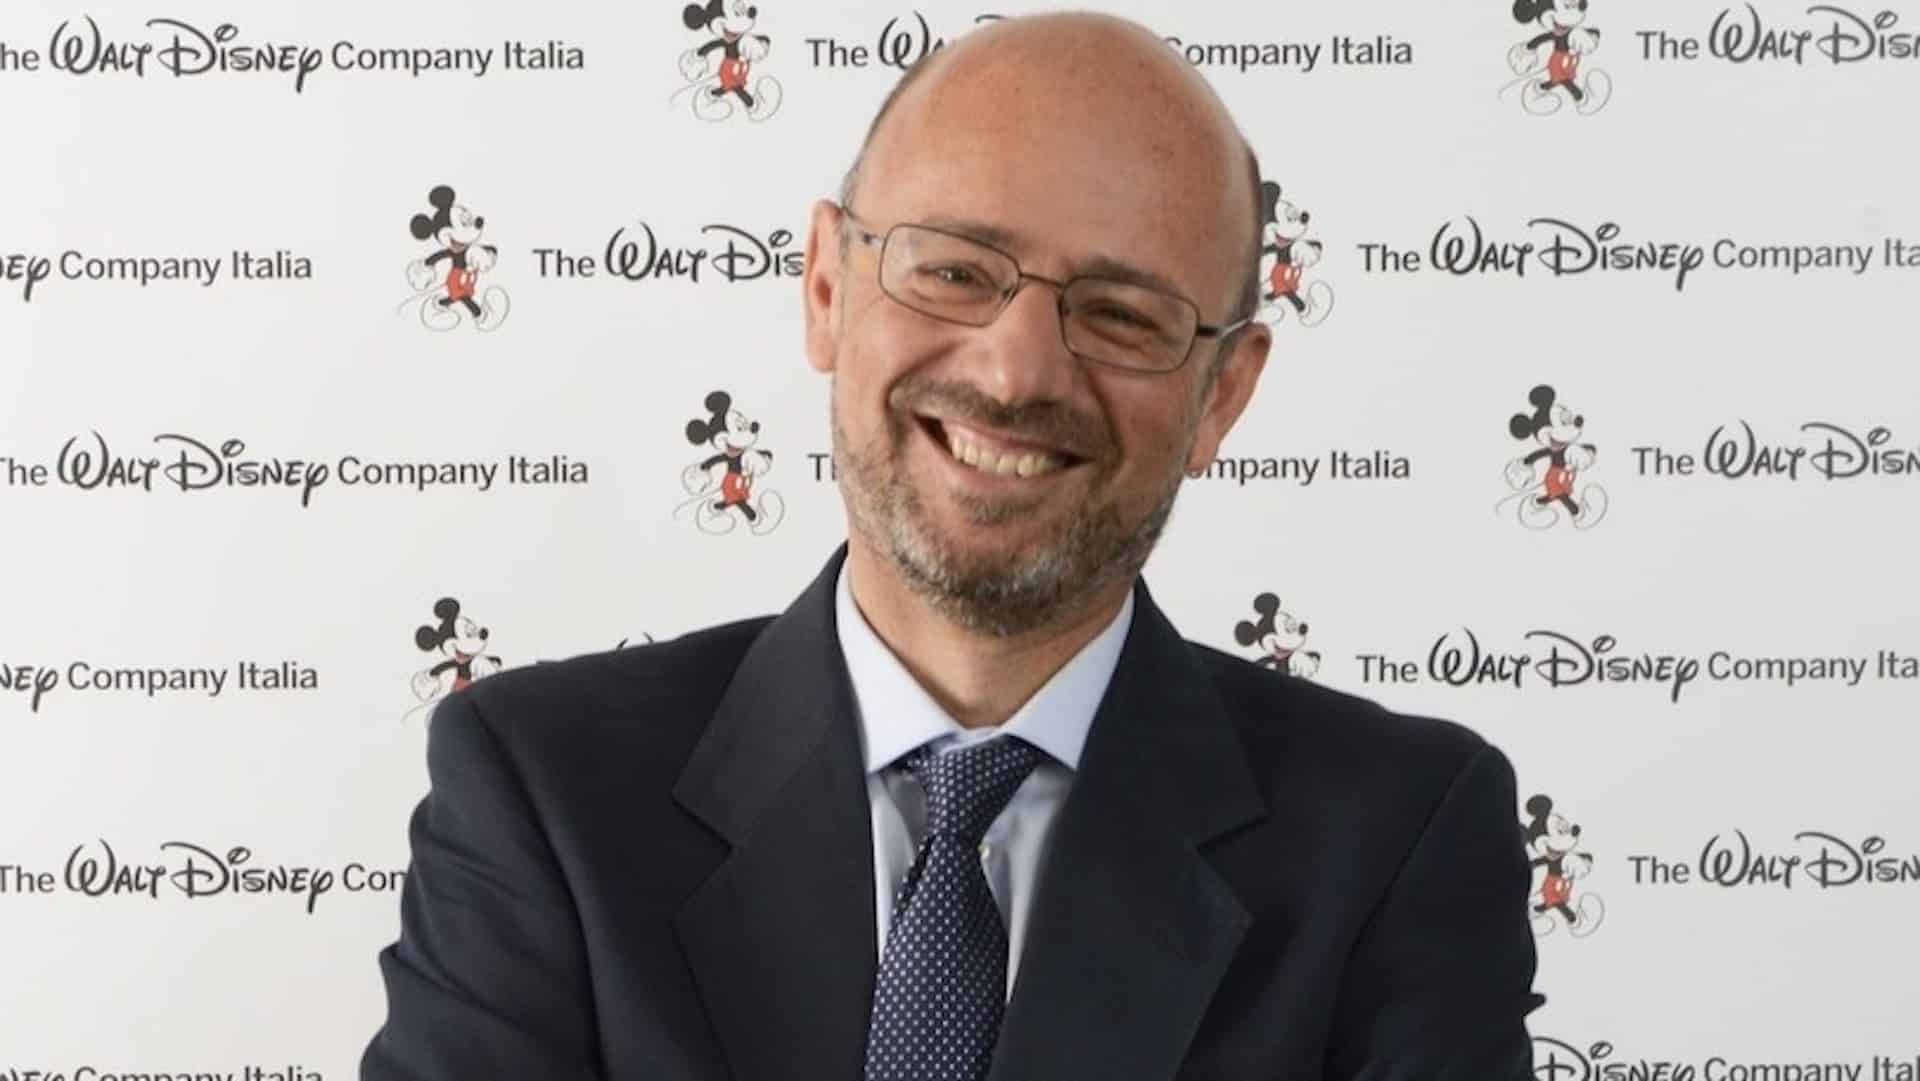 Giulio Carcano parla delle uscite Disney tra citazioni a Fox e apprezzamenti del pubblico